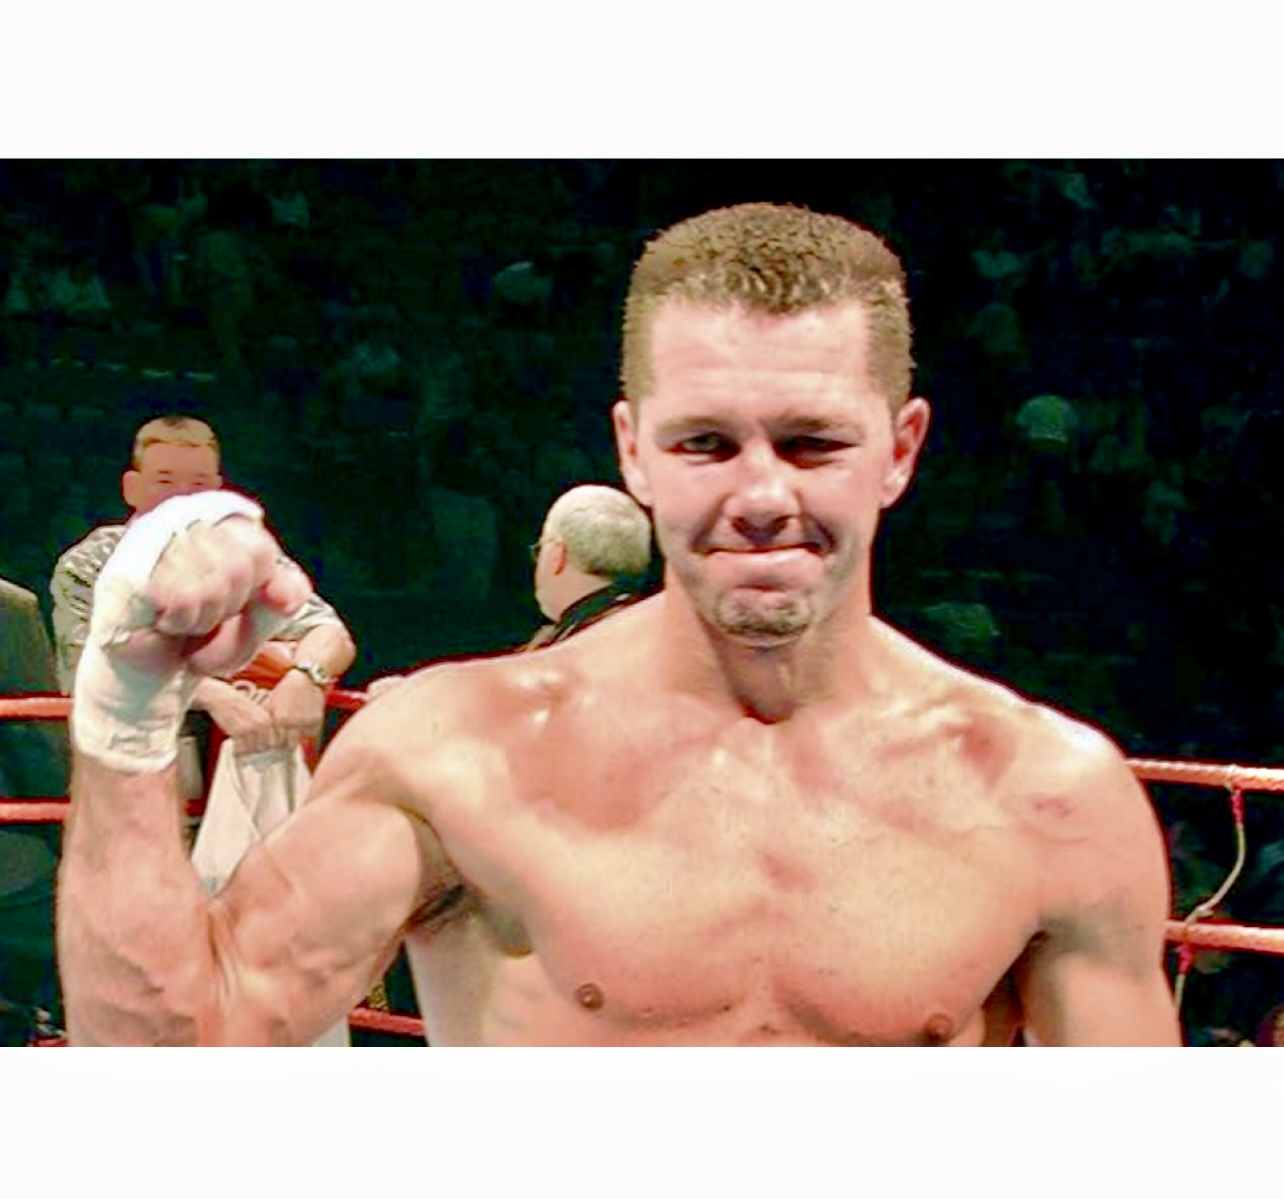 Un boxeur pose triomphalement, le poing en l’air.